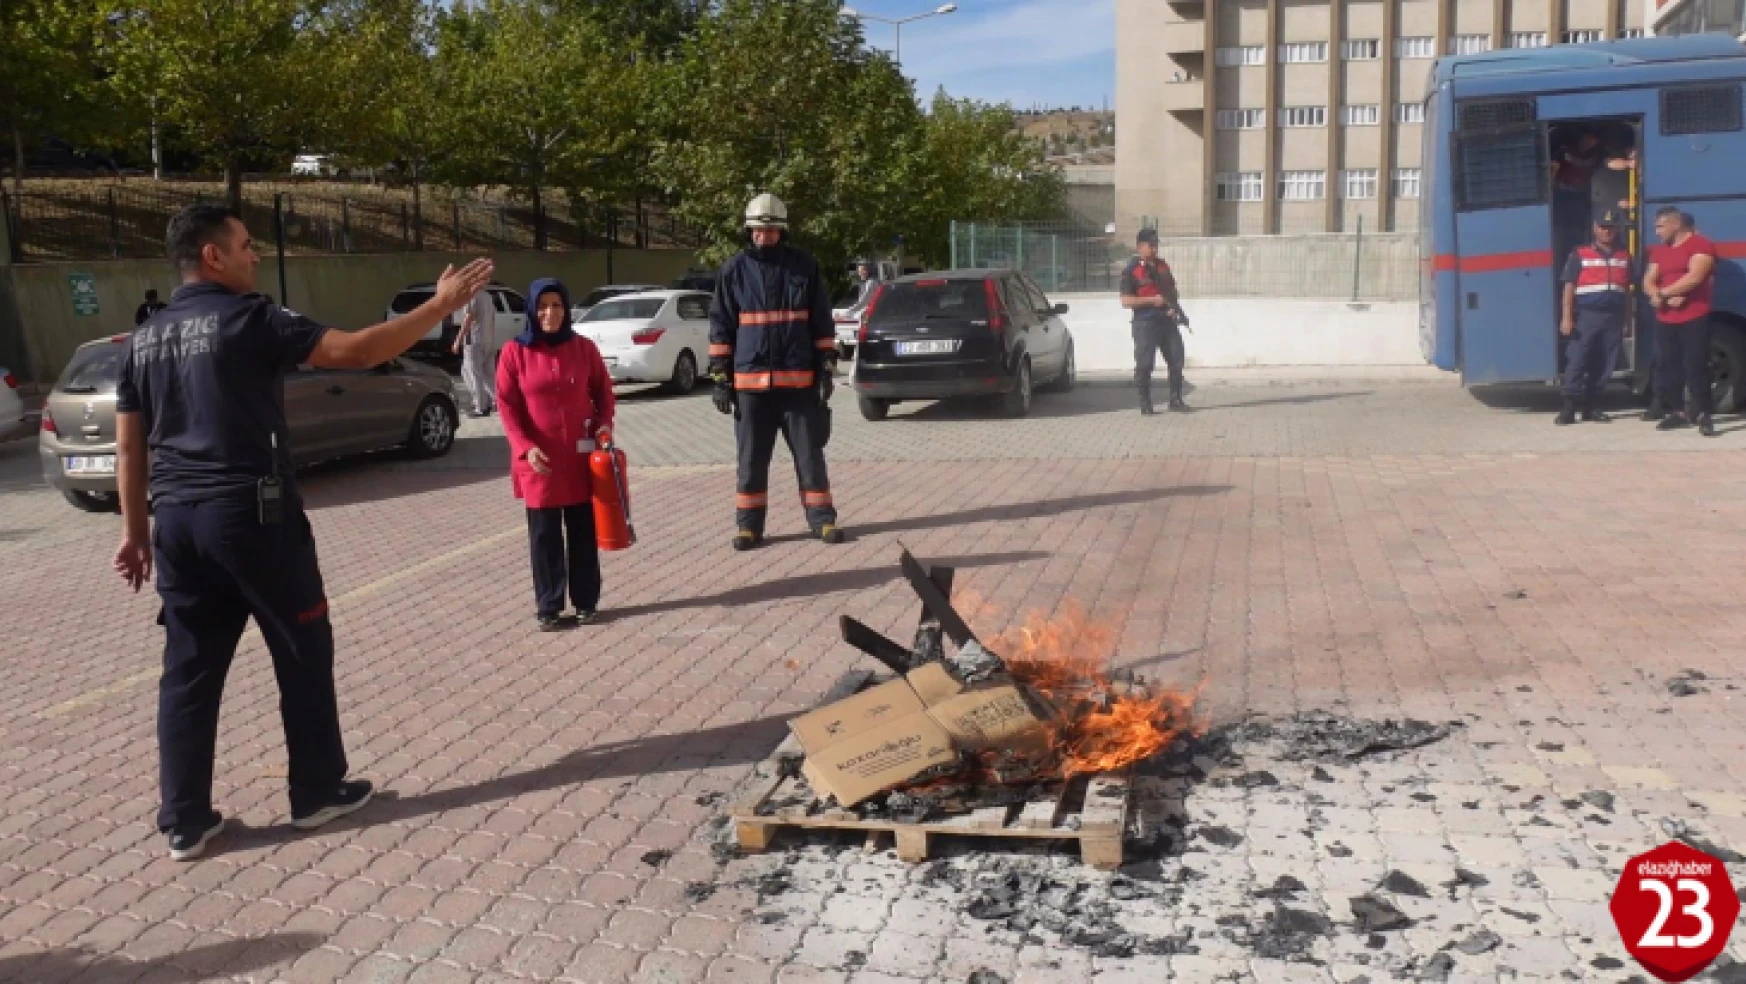 Fırat Üniversitesi Hastanesinde Yangın Eğitimi ve Uygulamalı Tatbikat Çalışması Yapıldı